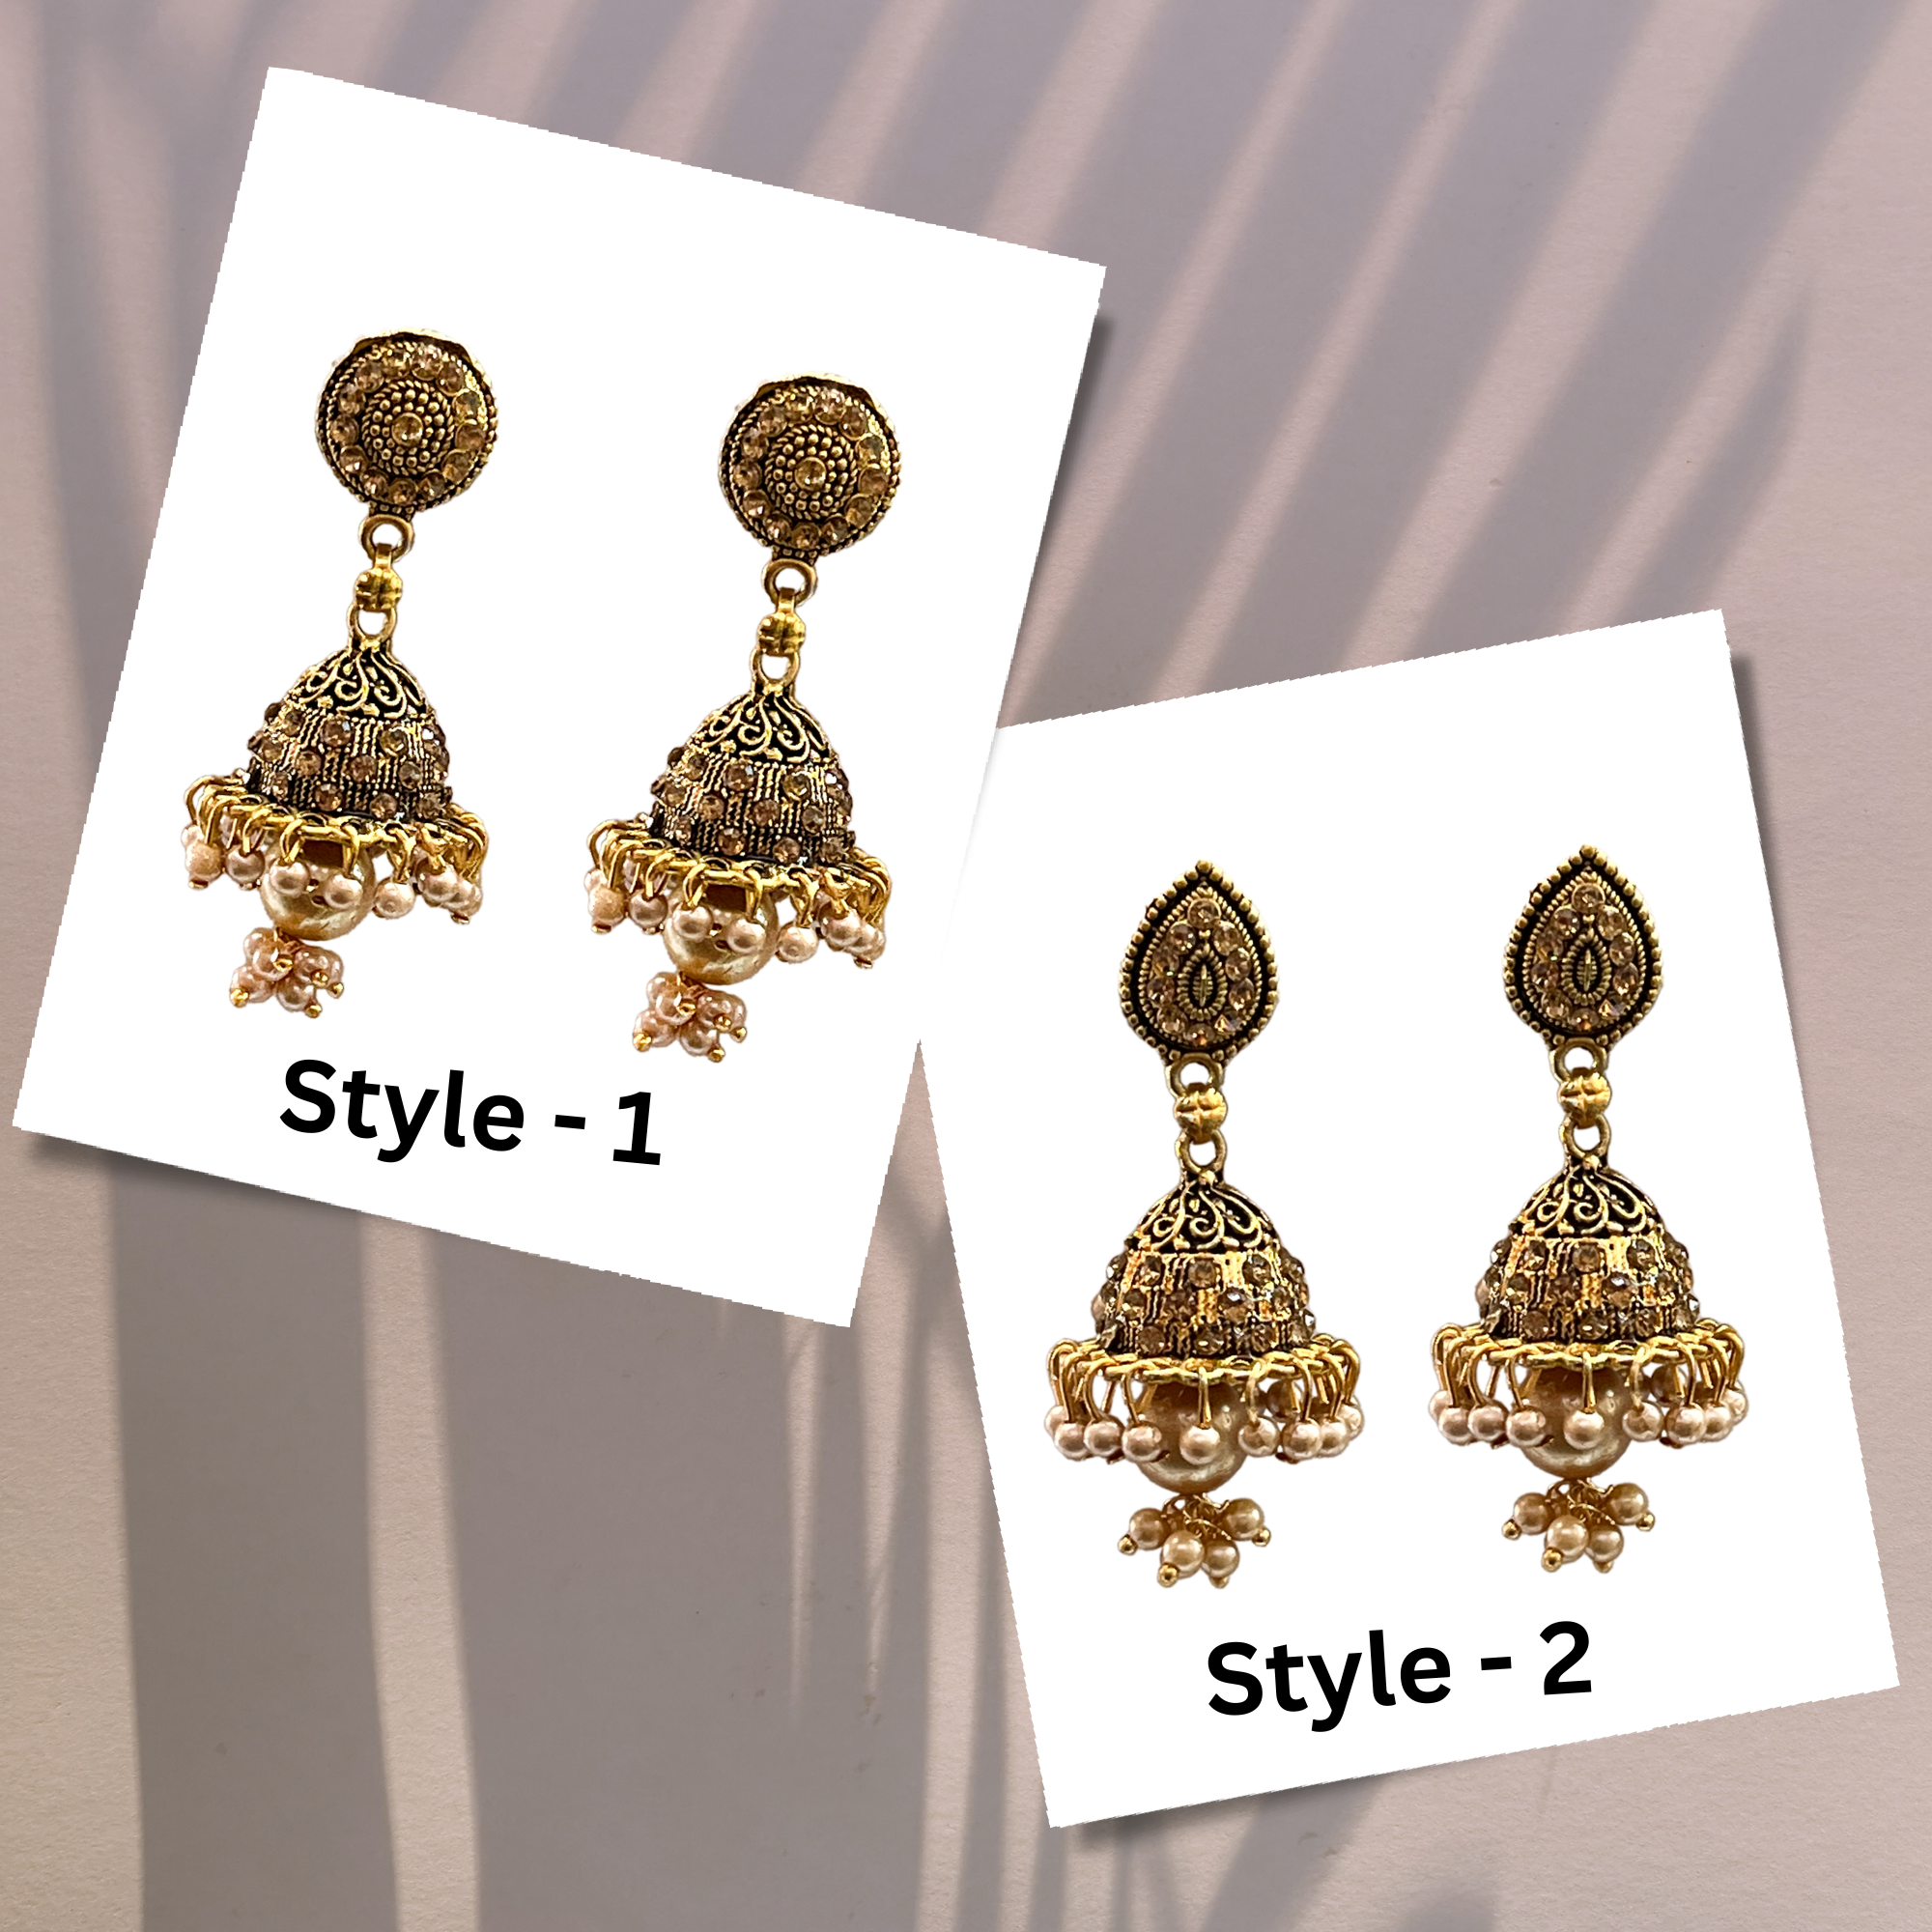 gold-plated earrings, jhumka oxdisied earrings, pearl drop earrings